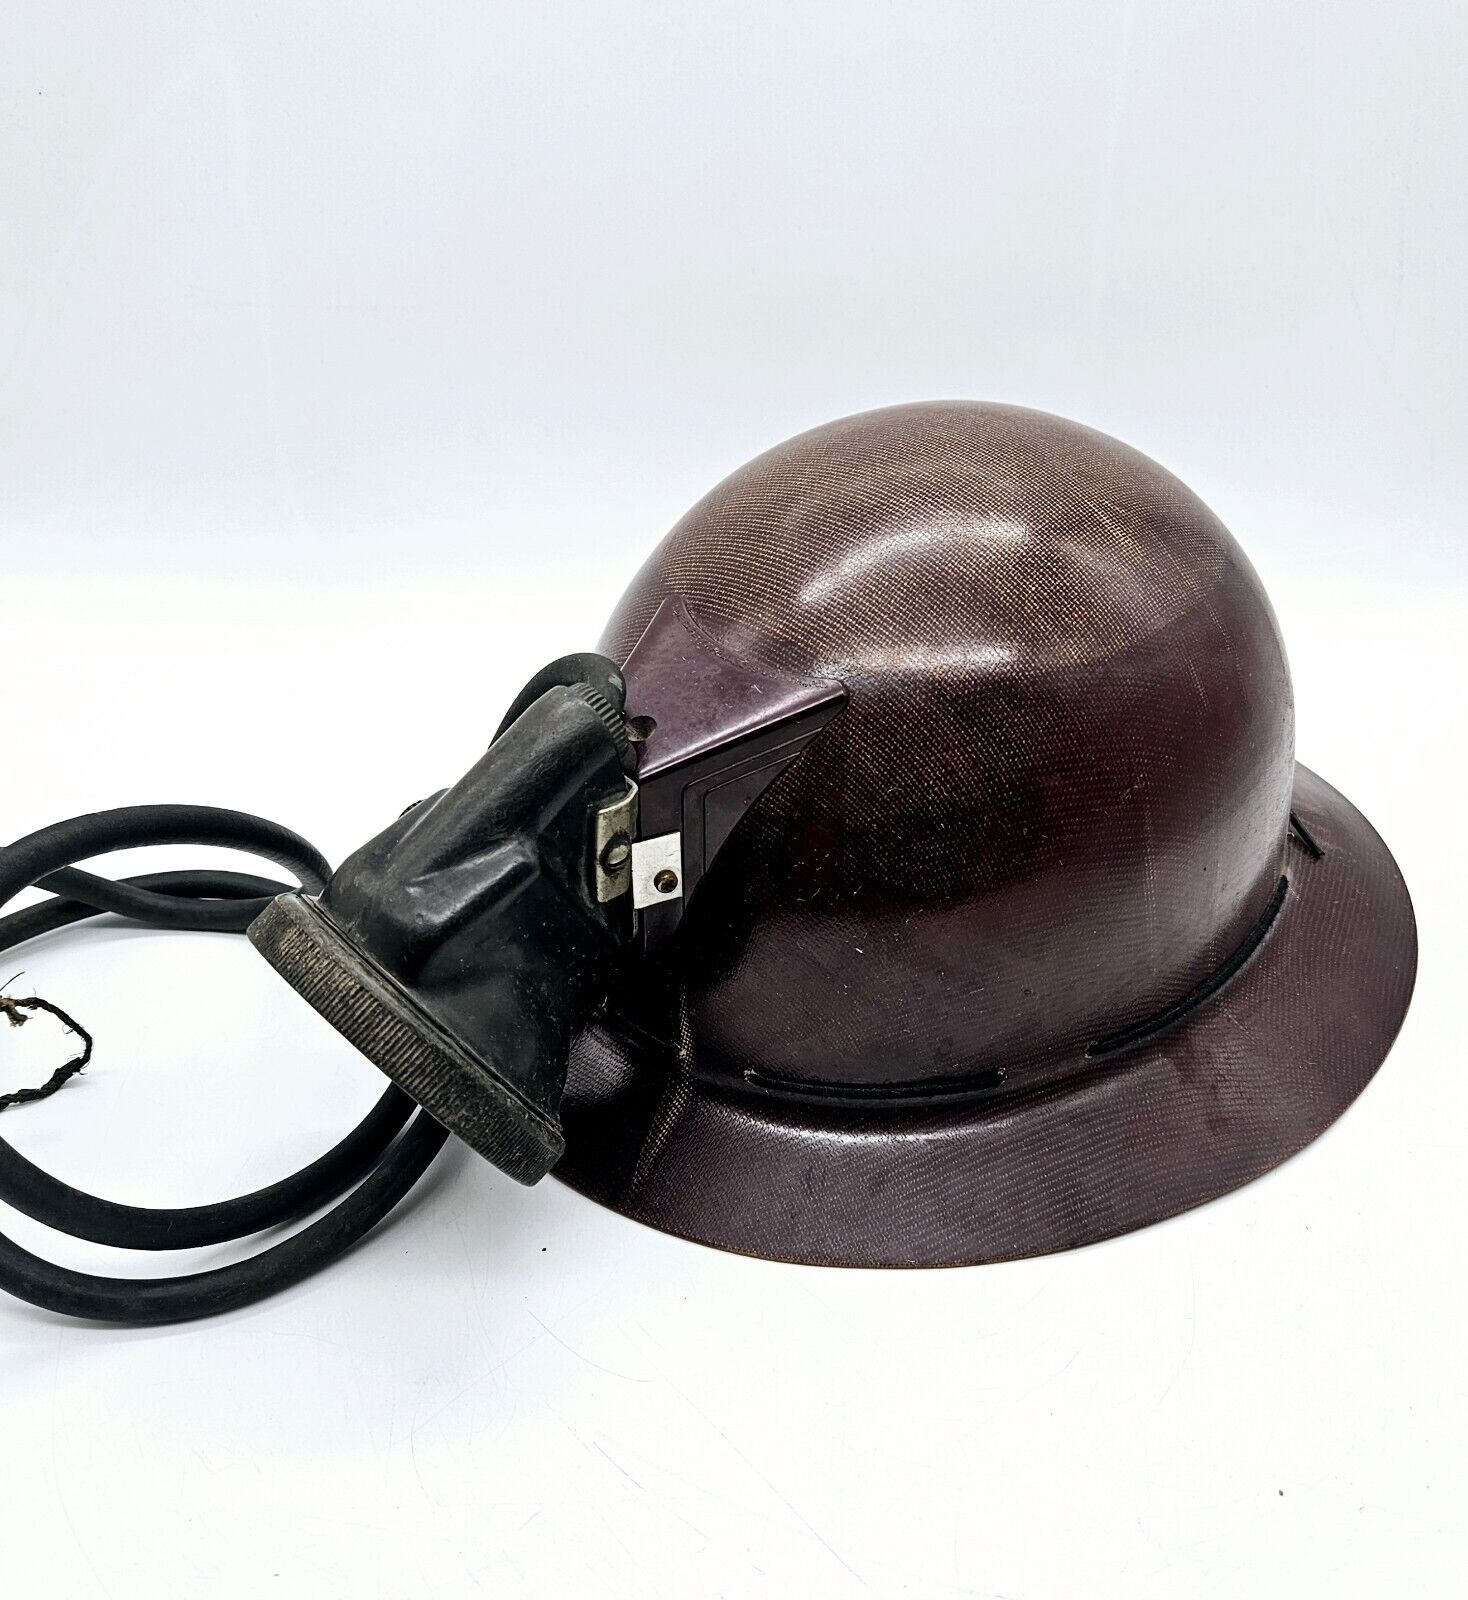 MSA Skullgard Full Brim Hard Hat Type K Miner Mining Helmet with Light